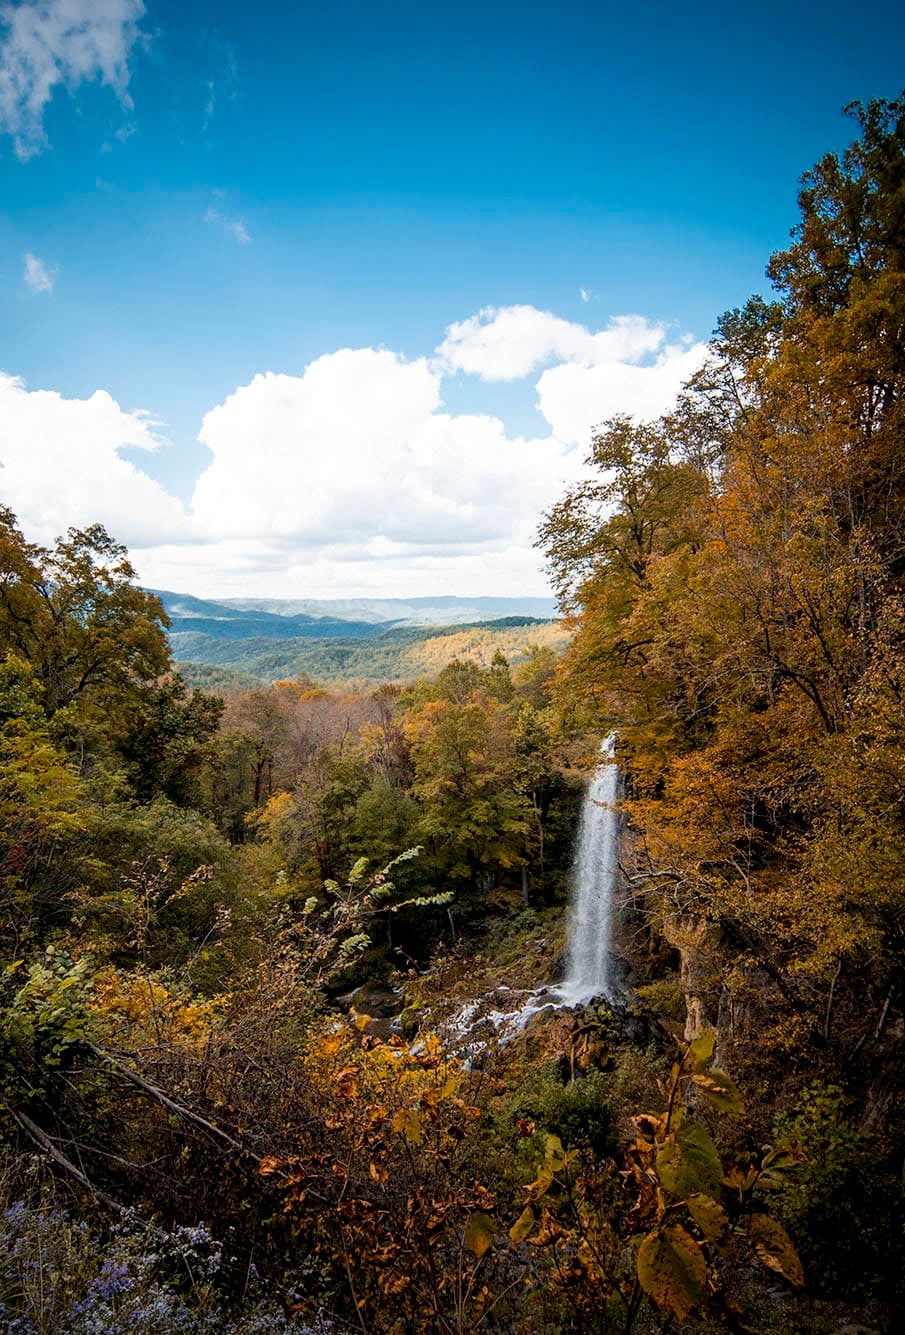 Waterfall in Hot Springs, Virginia